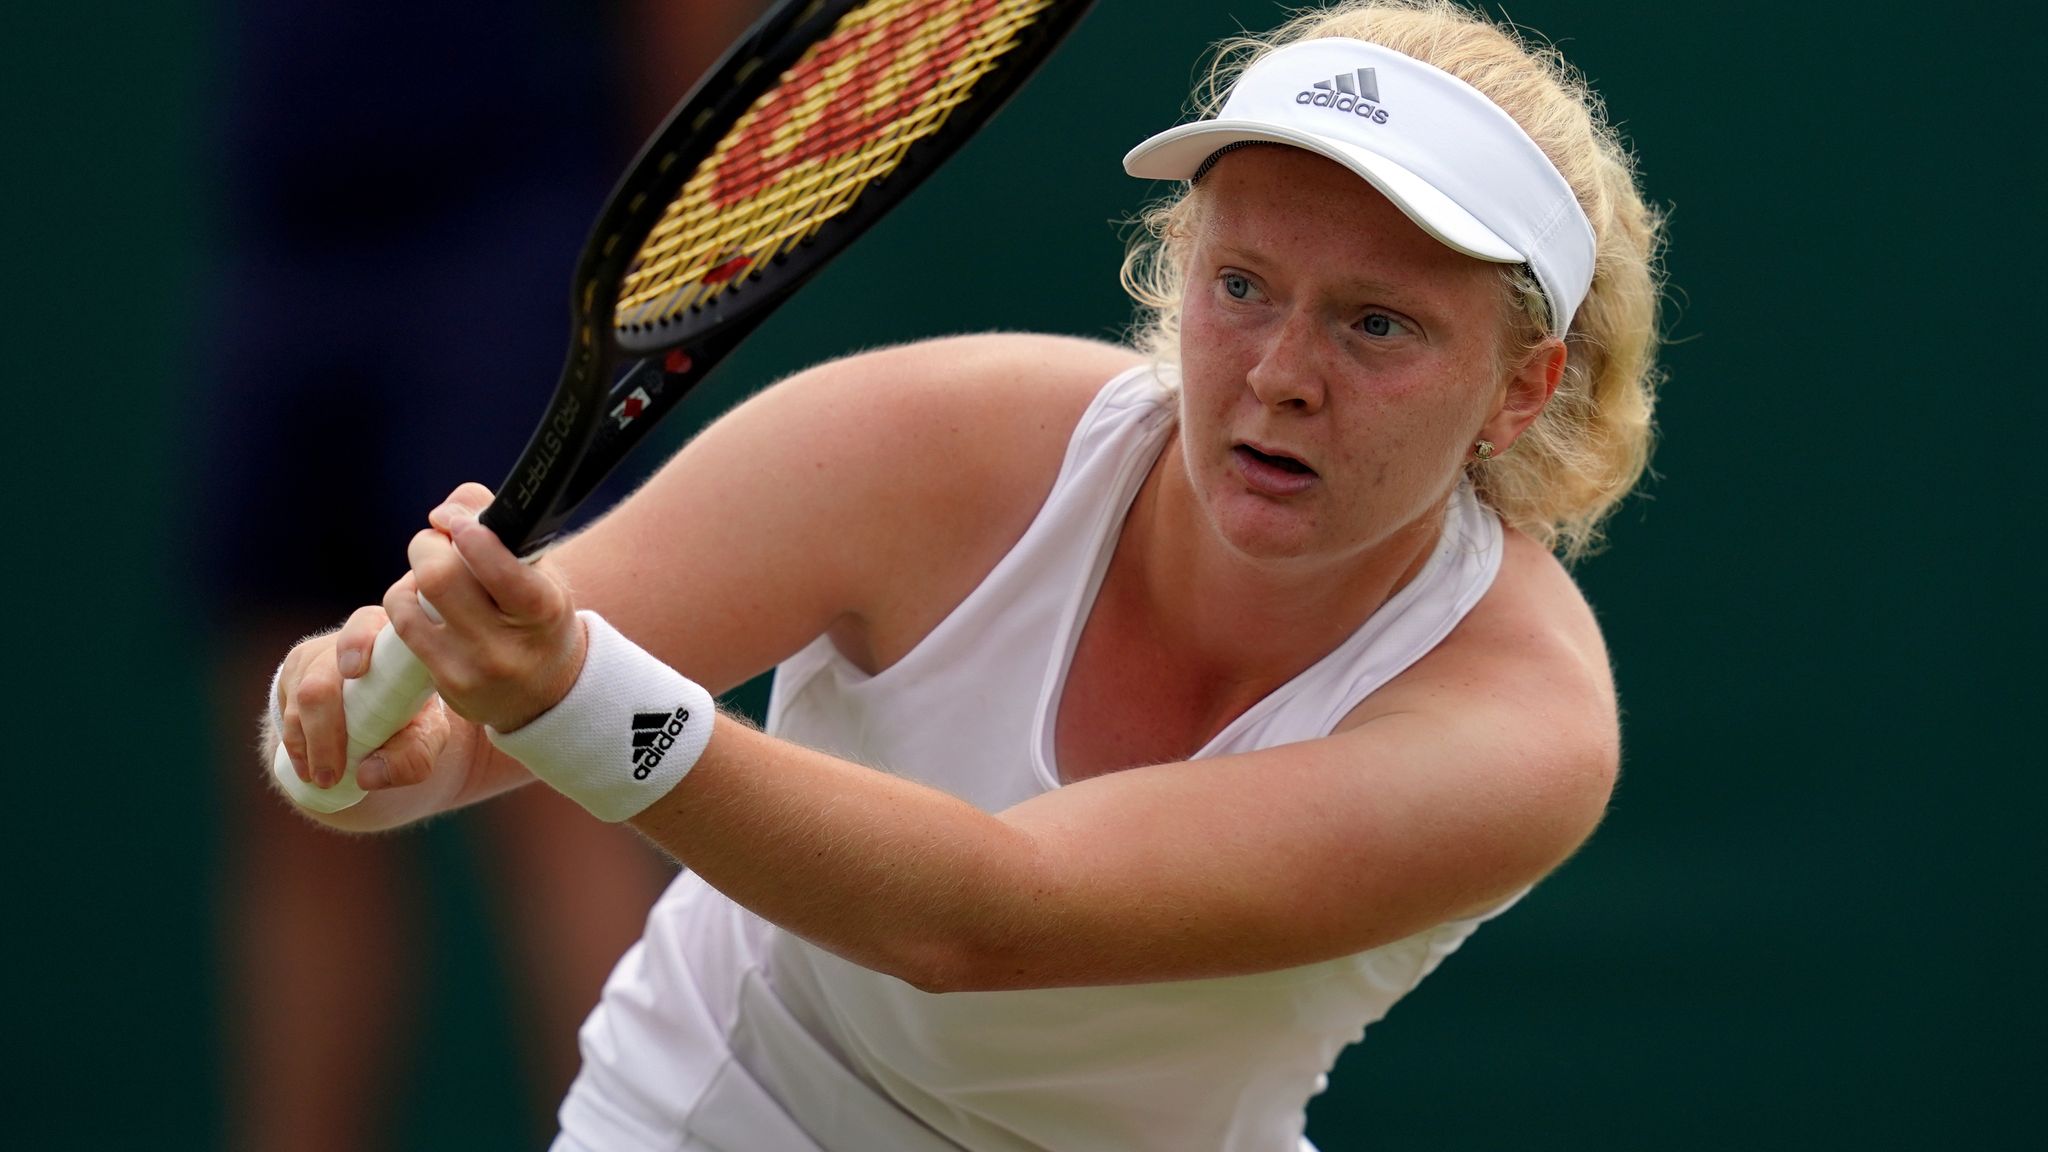 “Ārsti teica, ka viņa nevarēs spēlēt” – tenisiste apgāž prognozes un iekļūst “Australian Open”